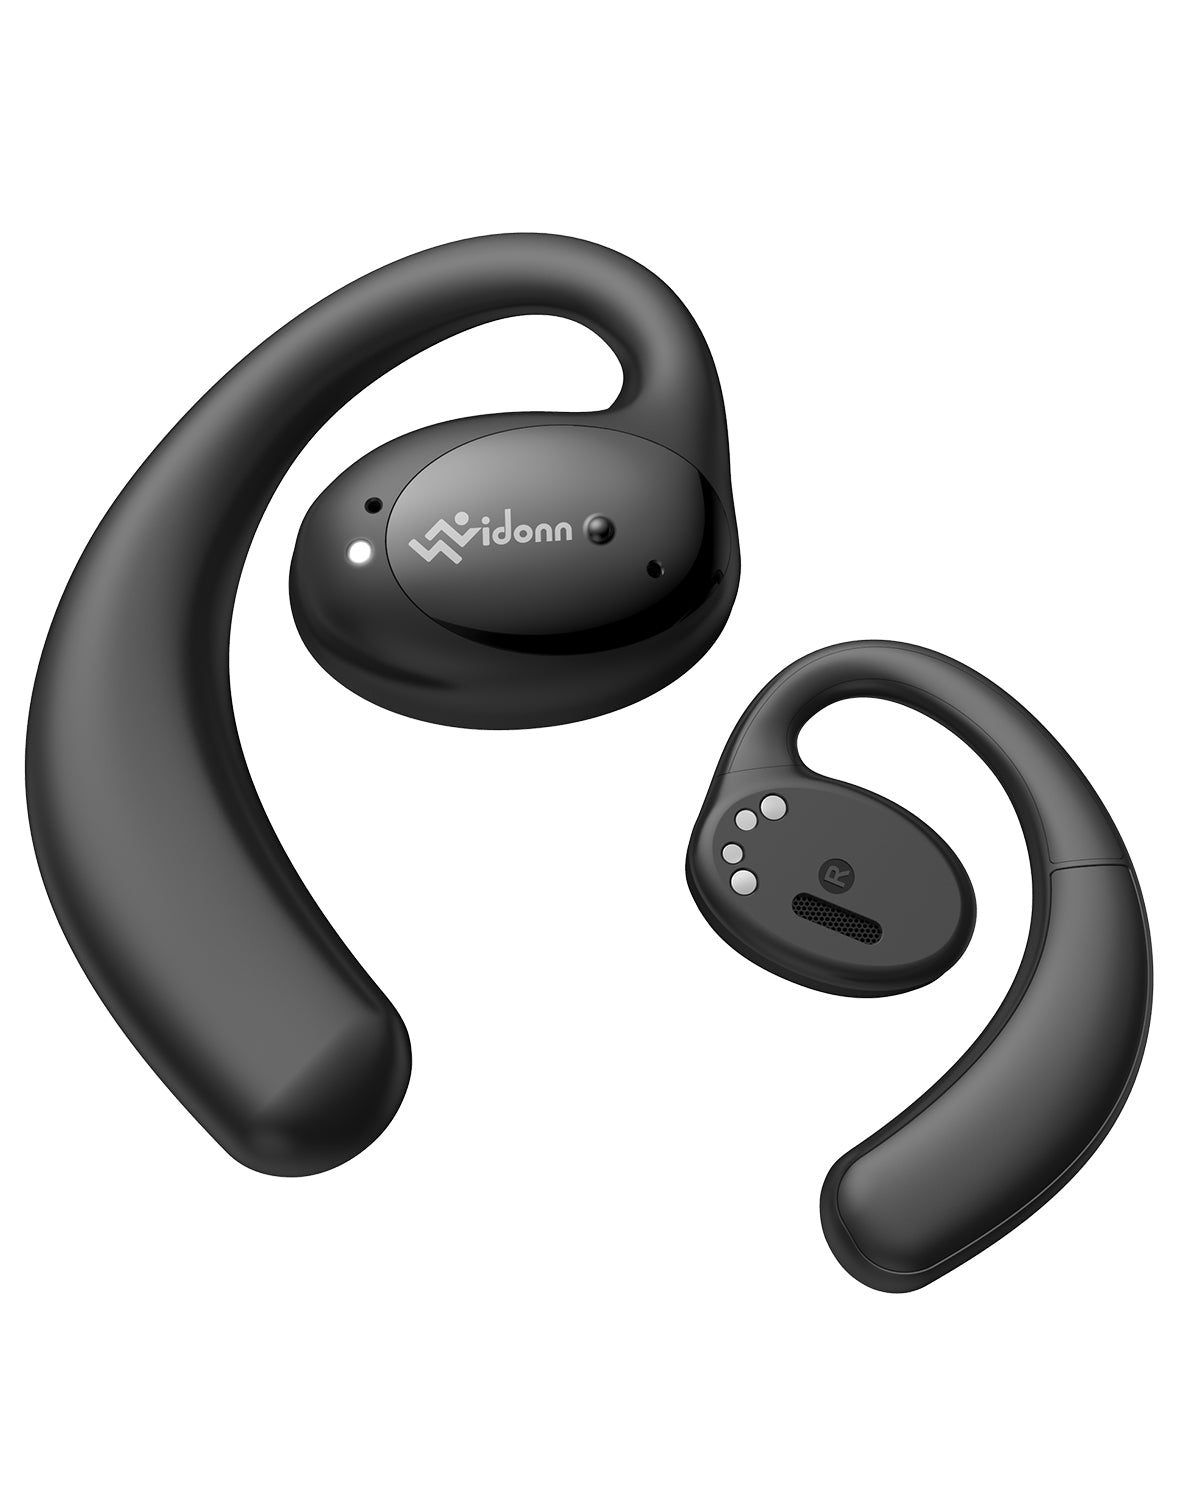 Vidonn T2 Open-Ear True Wireless Headphones Color Black